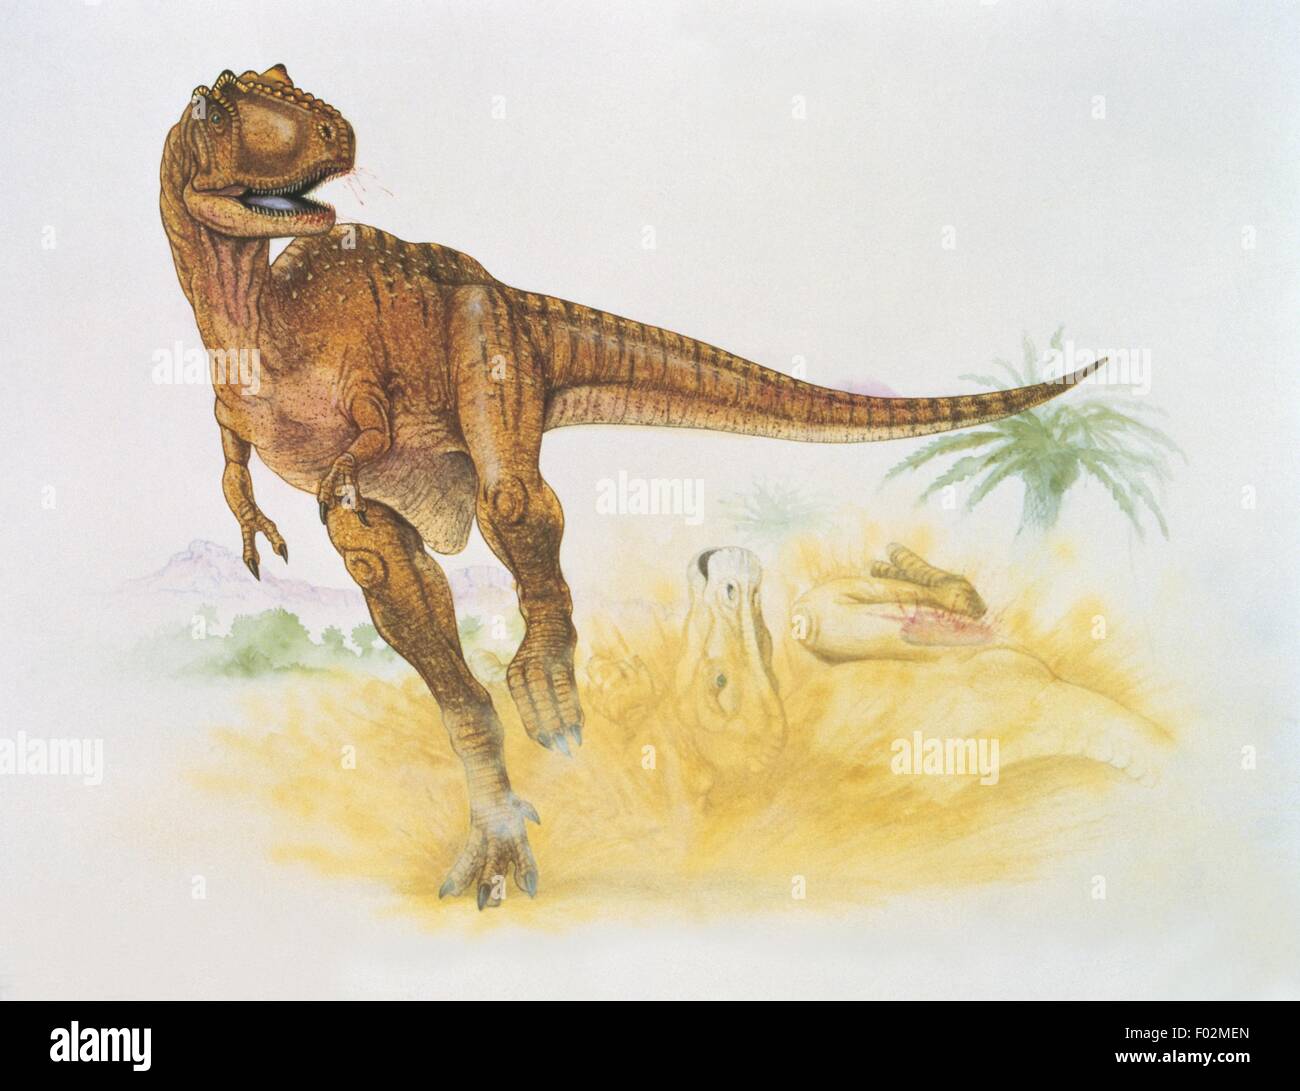 Paléozoologie - Crétacé - Dinosaures - Albertosaurus (art par Graham Rosewarne) Banque D'Images